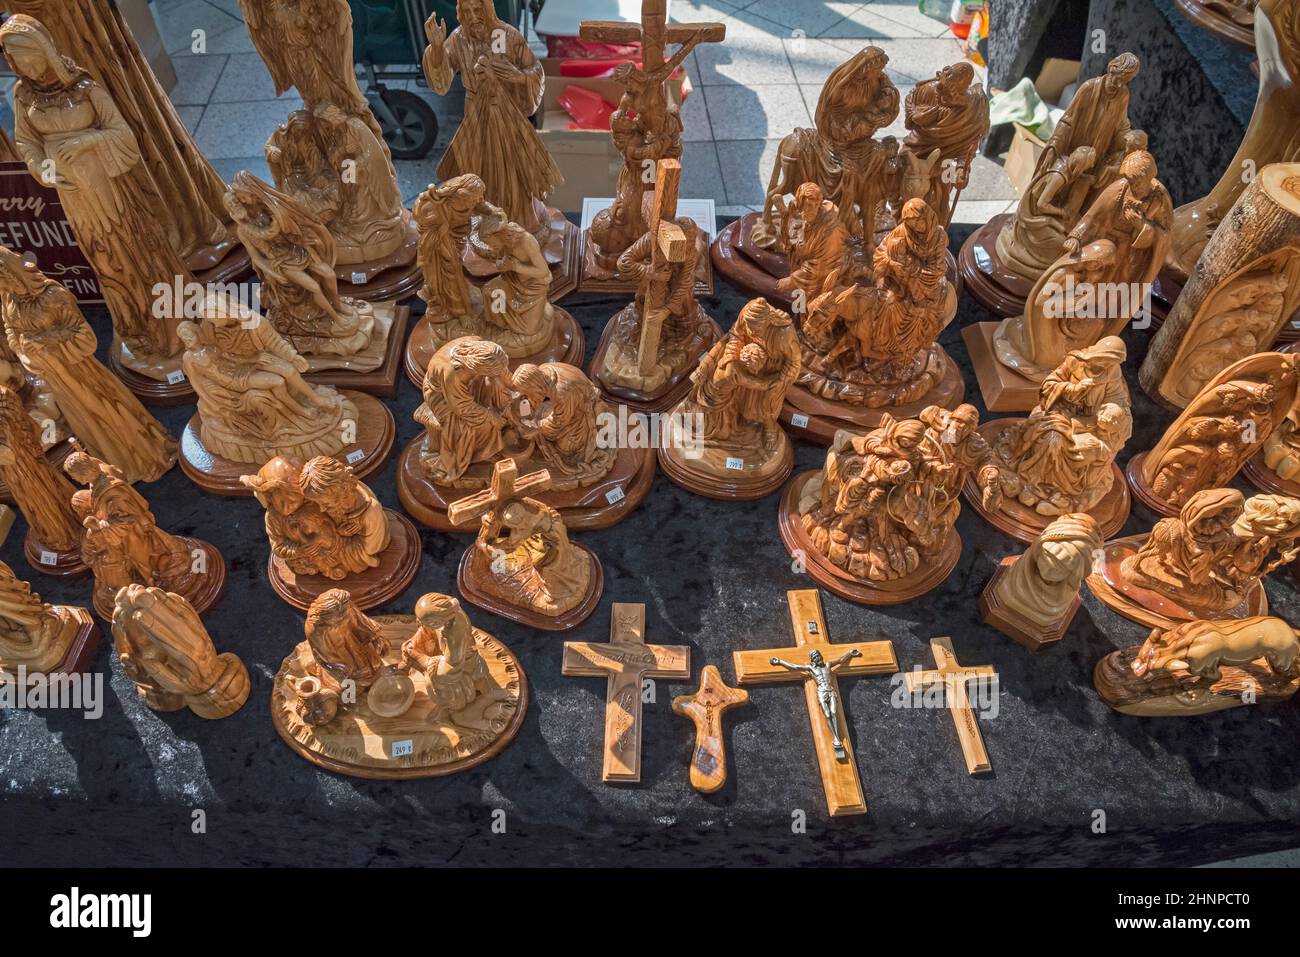 Handgefertigte christliche Kreationen aus Holz aus dem Heiligen Land (Israel), die während der Weihnachtszeit in einem Einkaufszentrum in Florida verkauft werden. Stockfoto